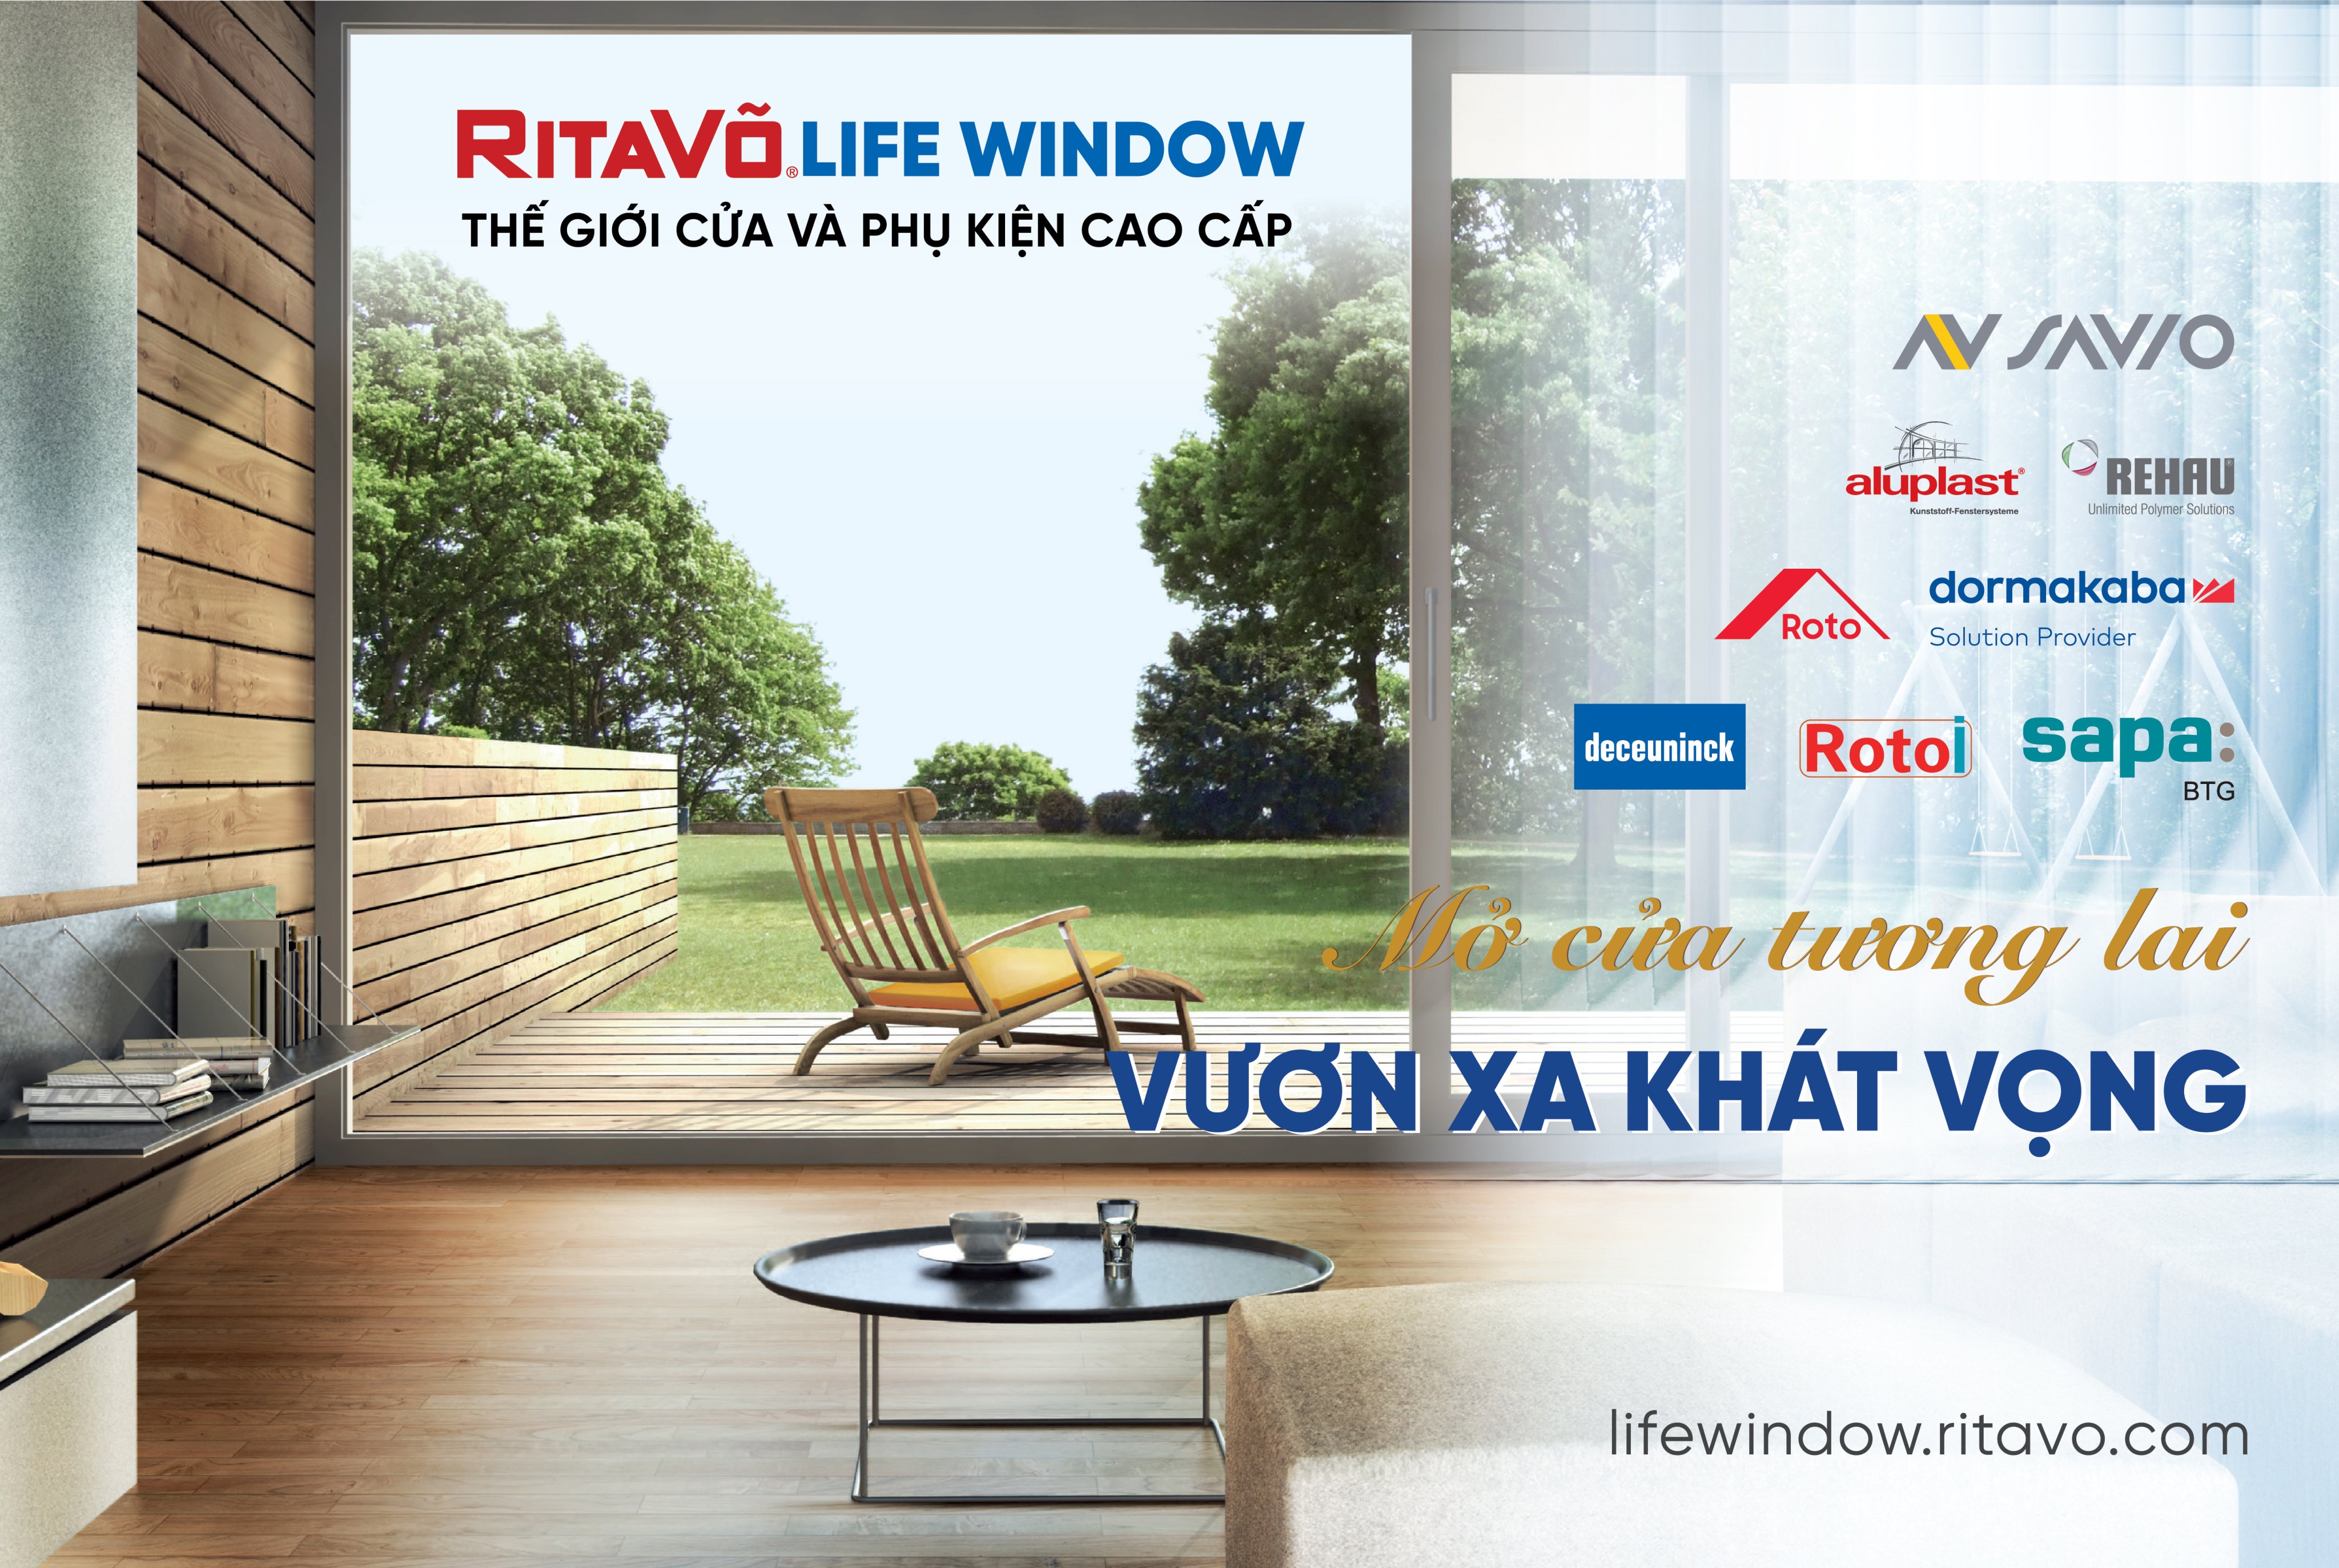 Ra mắt thế giới cửa và phụ kiện cao cấp RitaVõ LifeWindow